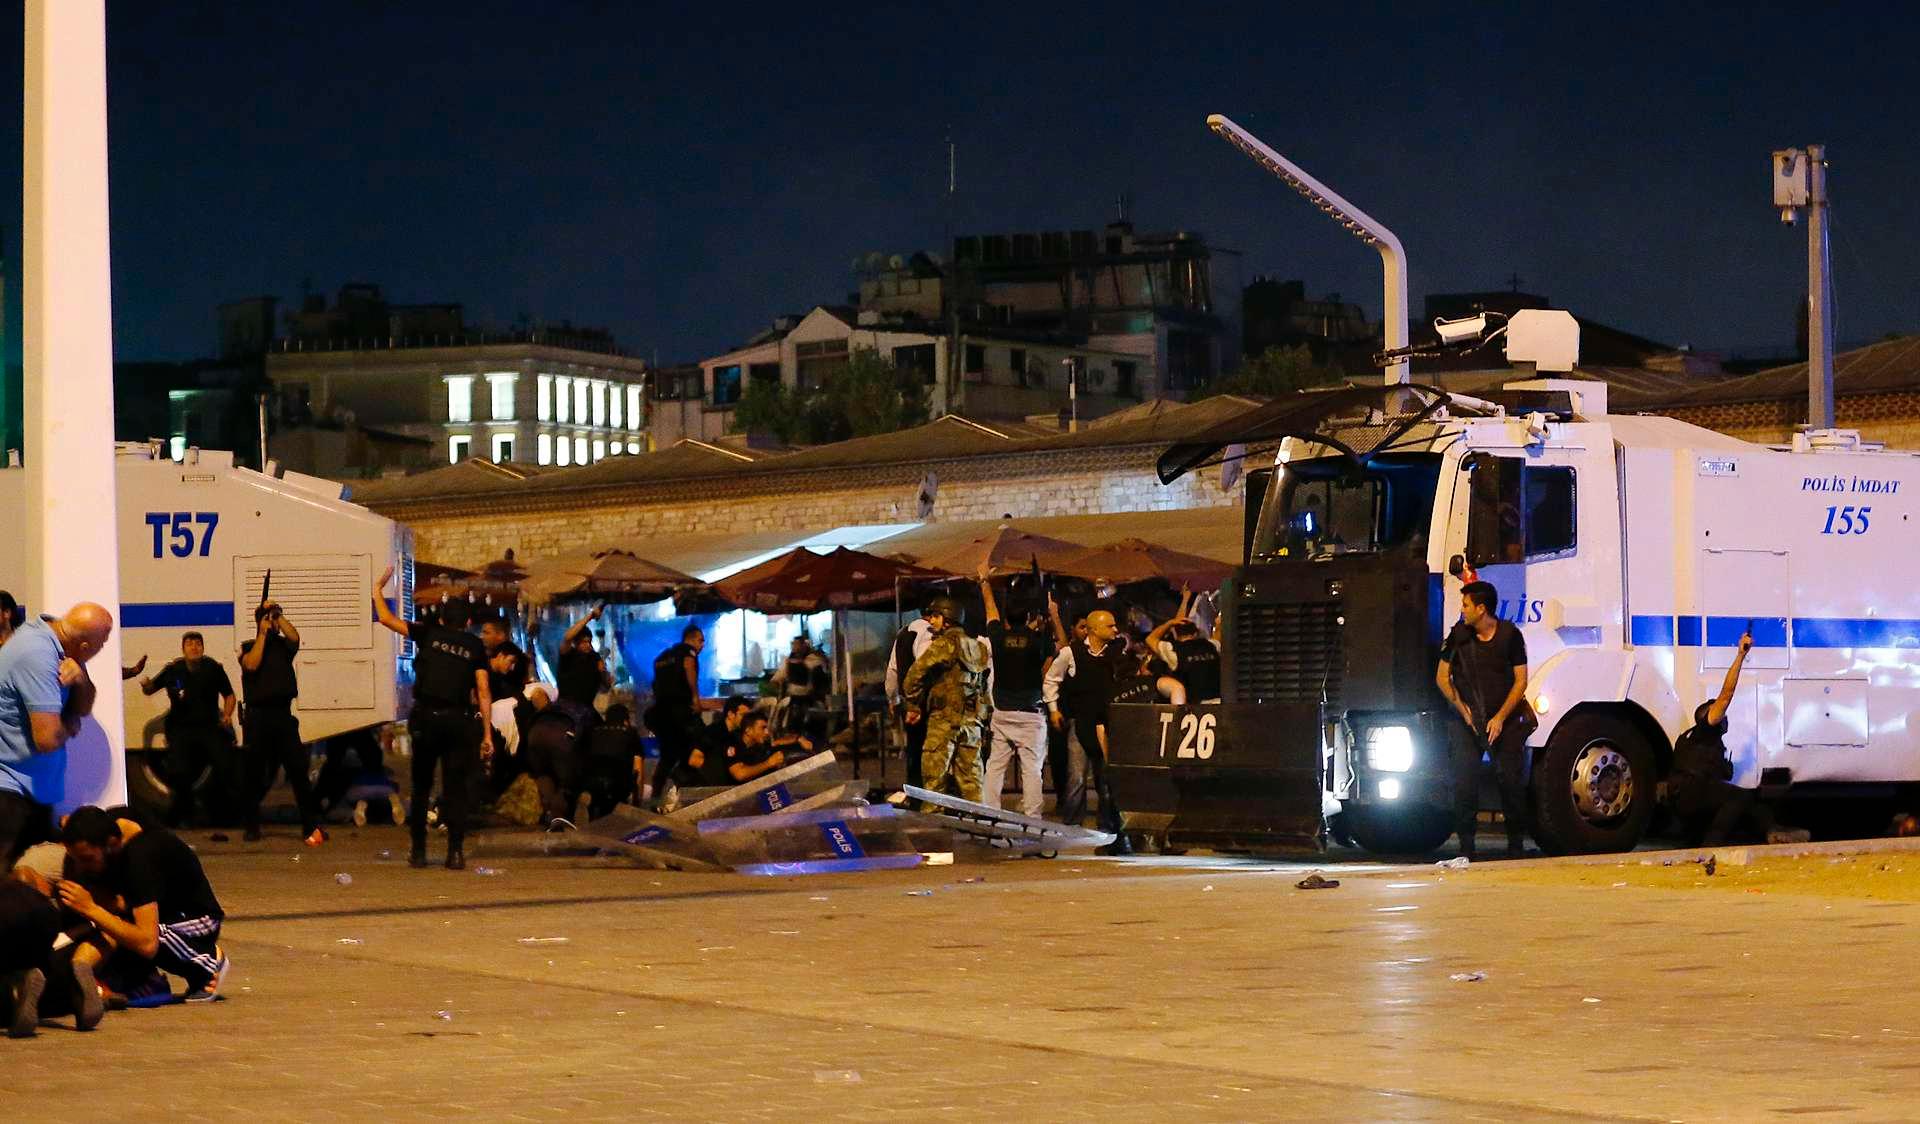 Det er hørt skudd på Taksimplassen i Istanbul. Folk søker tilflukt bak politikjøretøyer.